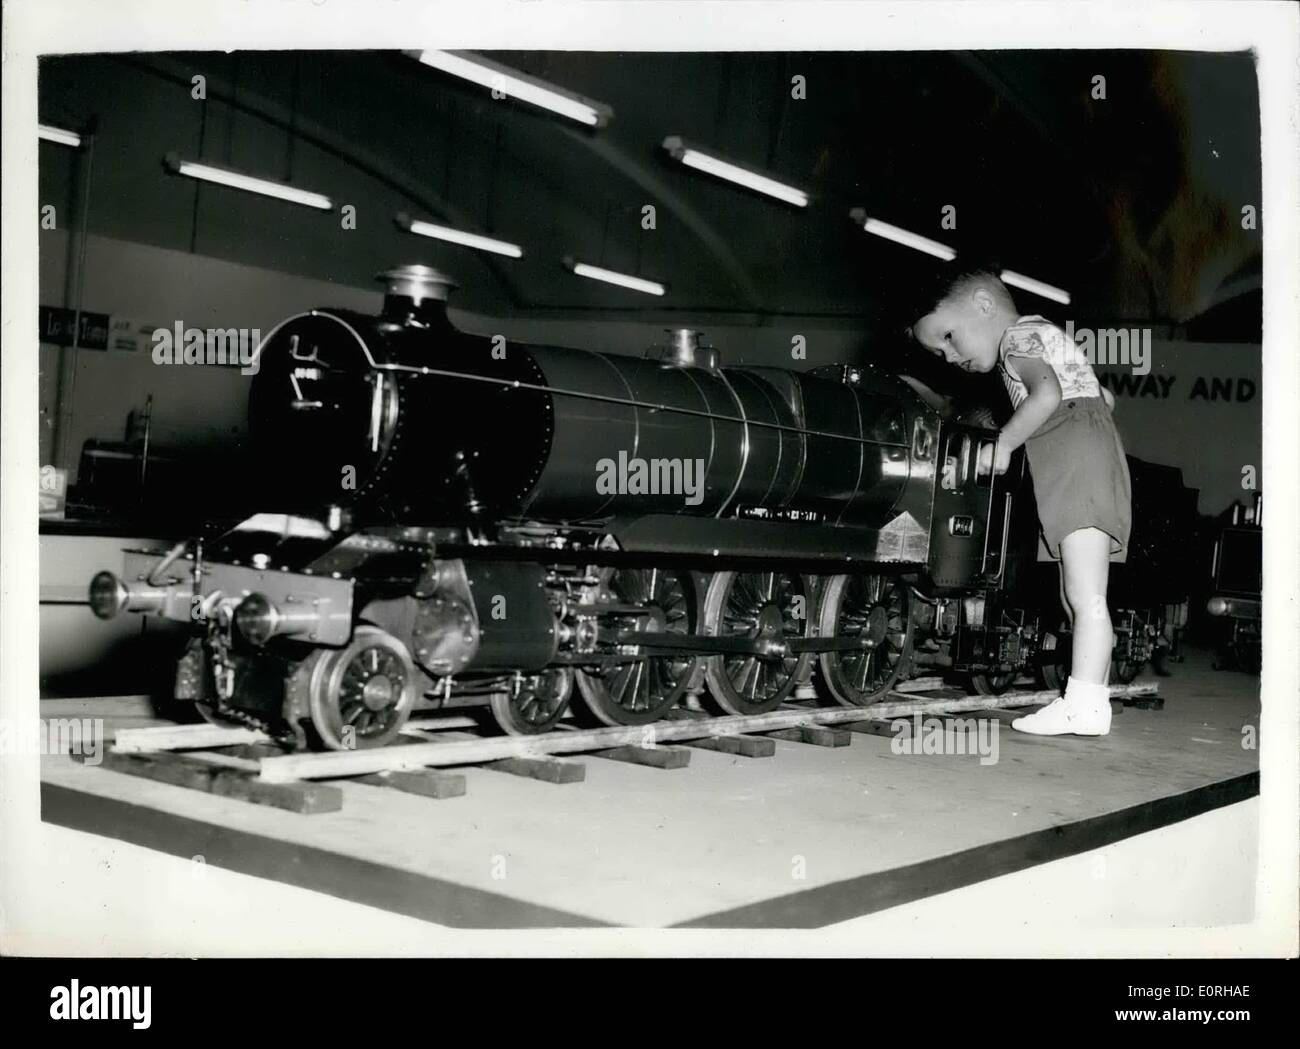 Sett. 09, 1959 - modello ferroviario Hobby Show: Il quinto modello ferroviario Hobby Show si è aperta oggi presso il Central Hall di Westminster. Mostra fotografica di Robin Killick (da 31/2) ha un grande divertimento con un modello grande convoglio ferroviario - presso la mostra questa mattina. Egli viene da Crowborough, Sussex. Foto Stock